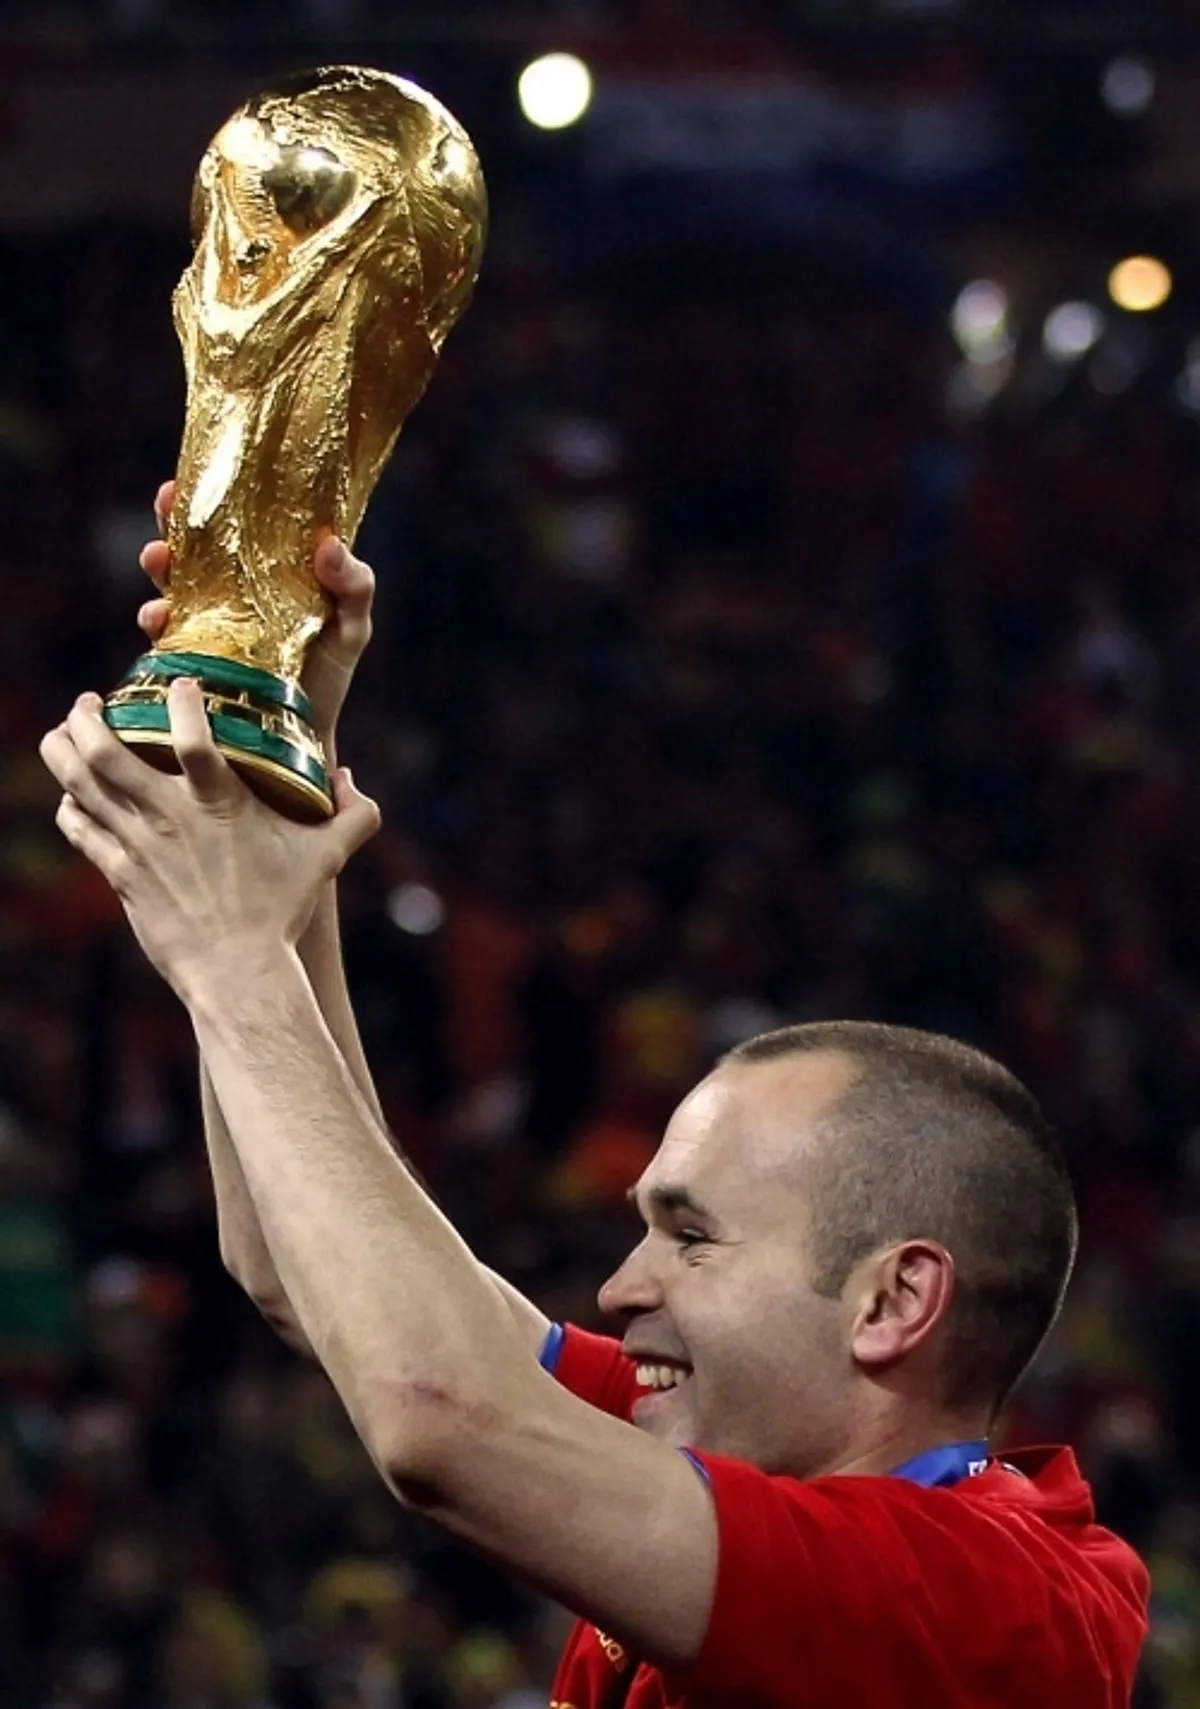 Pengantar Piala Dunia 2010 dan Perjalanan Spanyol